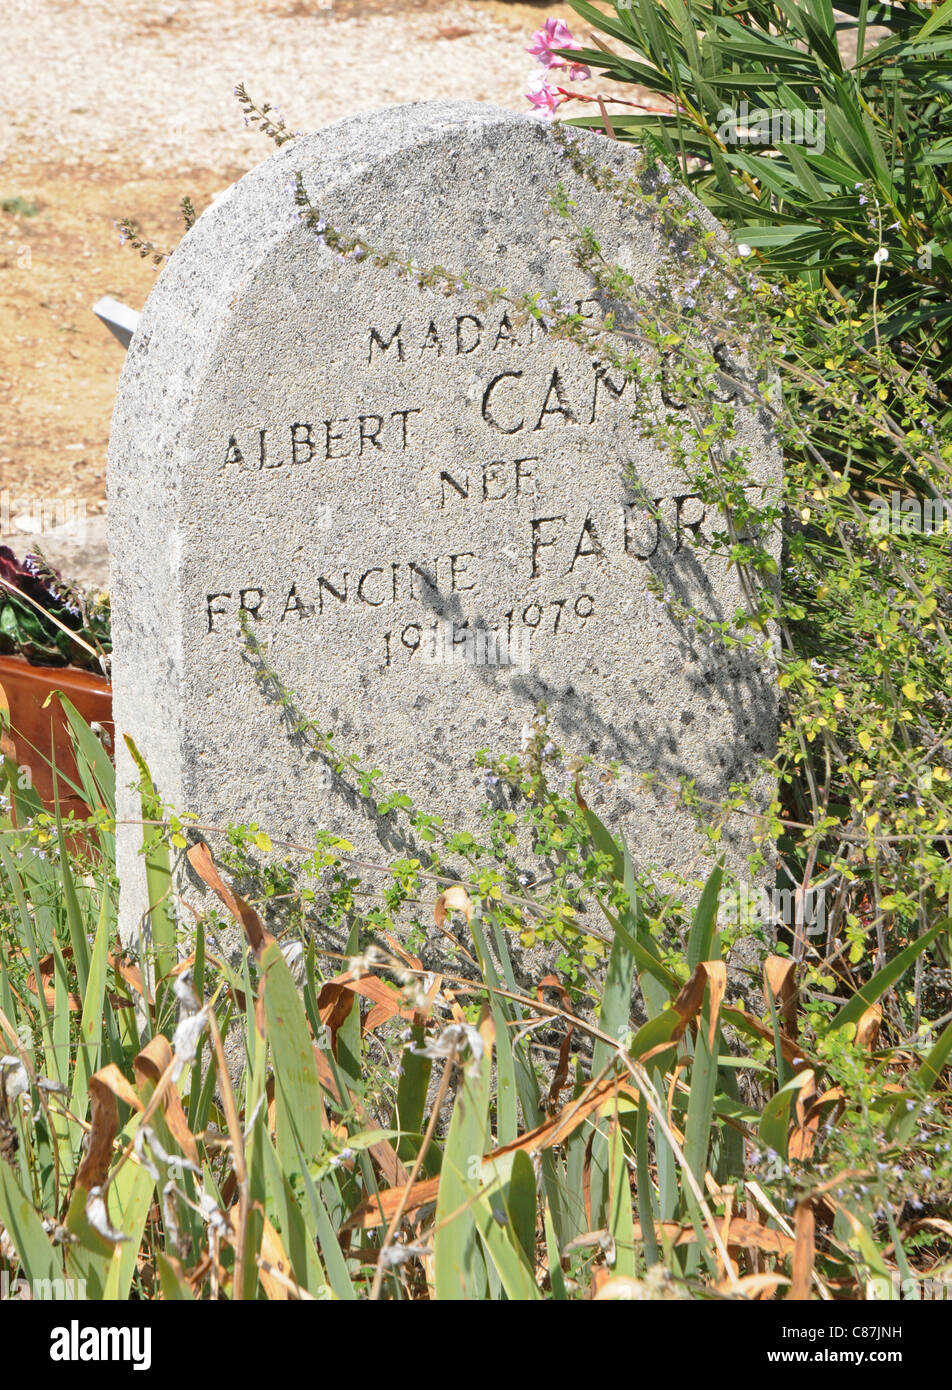 Francine Faure Grab - Mathematiker und zweite Ehefrau von Albert Camus - am Friedhof in Lourmarin in der Provence, Frankreich Stockfoto